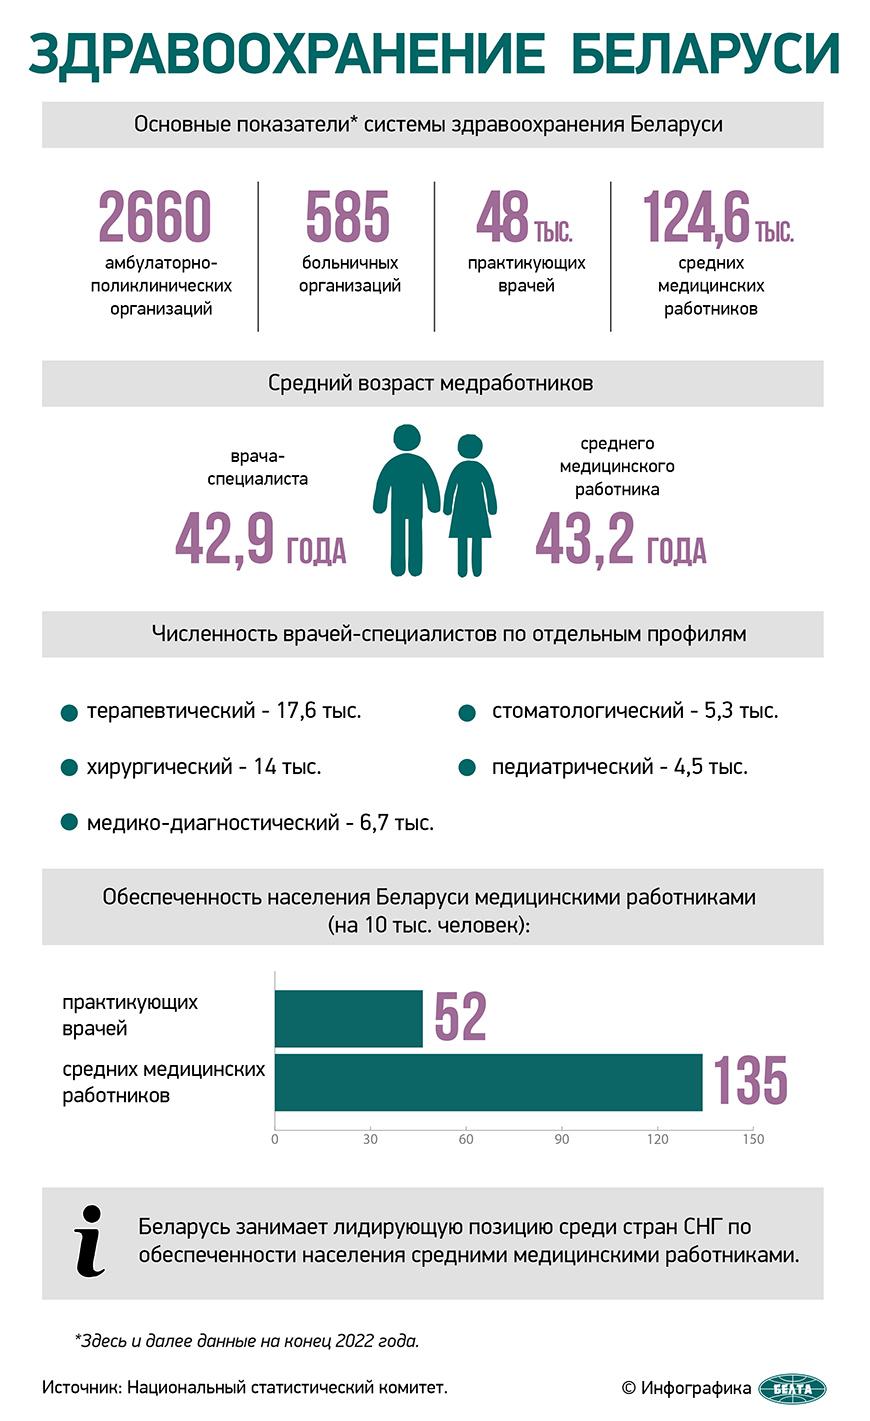 Здравоохранение Беларуси (Инфографика)